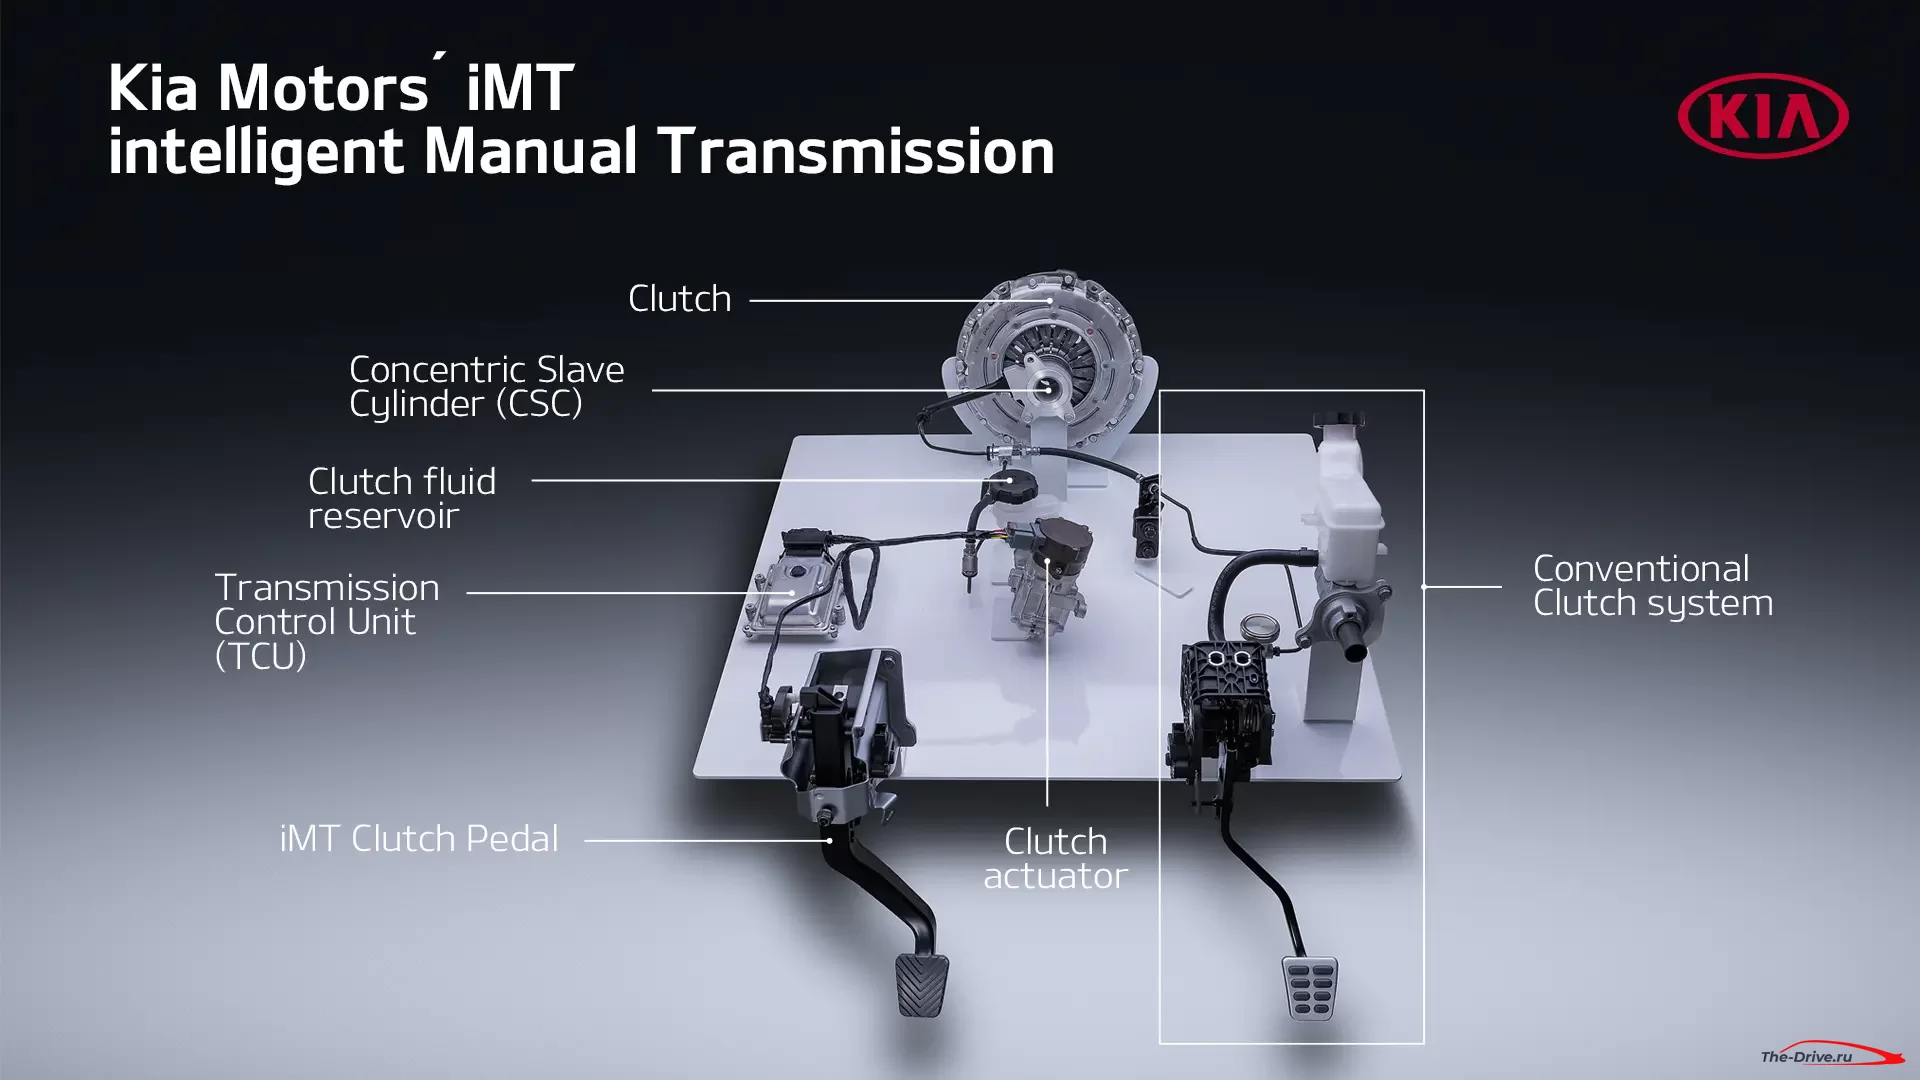 Интеллектуальная механическая коробка передач Kia. Как работает iMT и сцепление по проводам